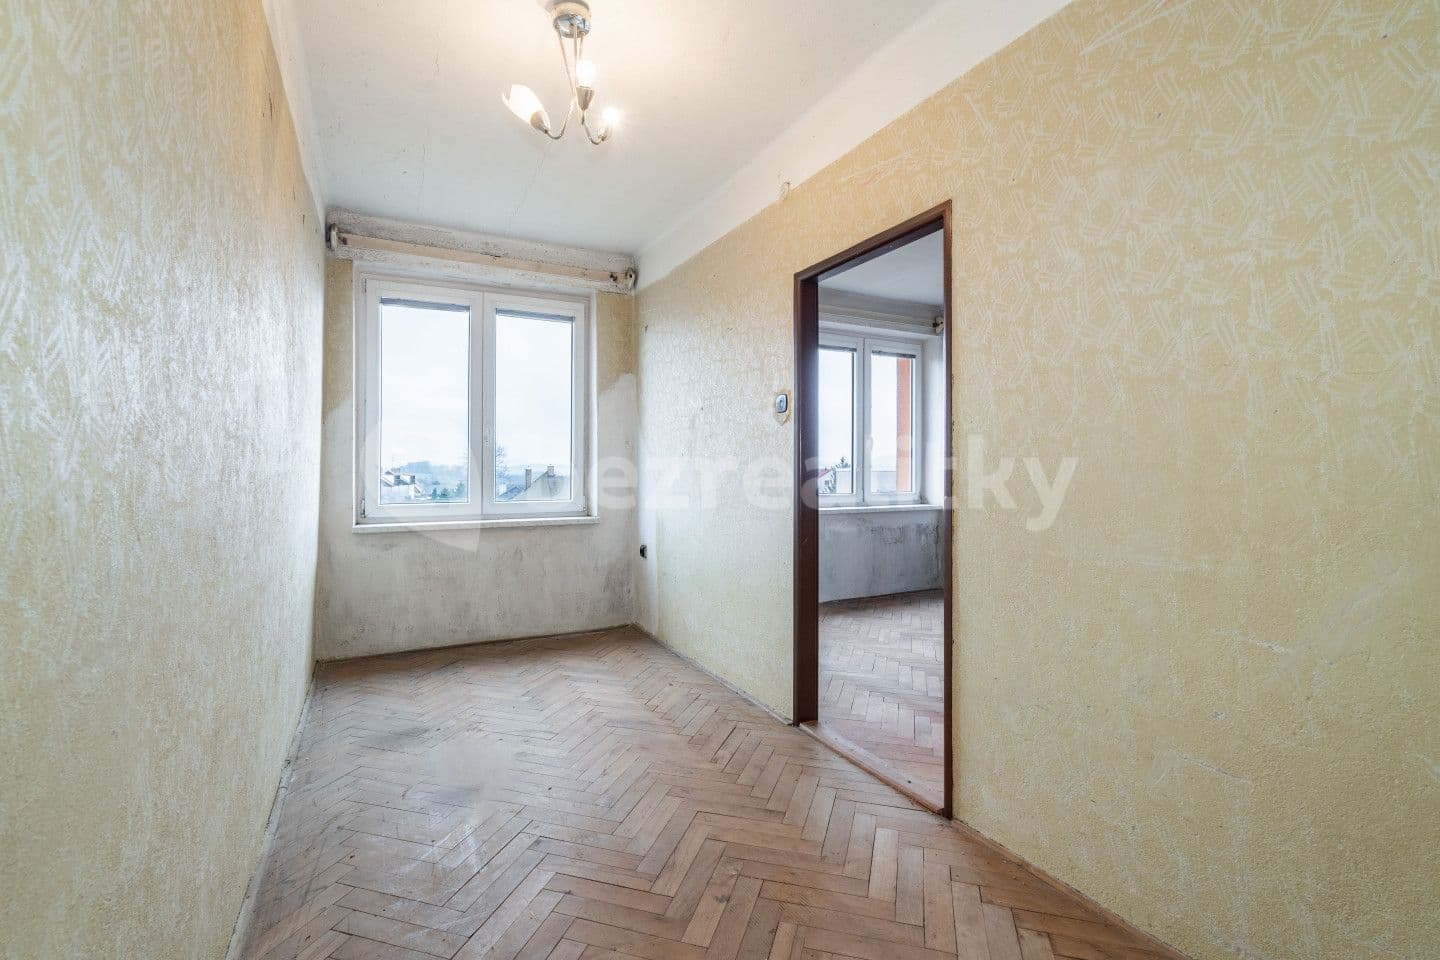 3 bedroom flat for sale, 67 m², Havlíčkova, Přibyslav, Vysočina Region